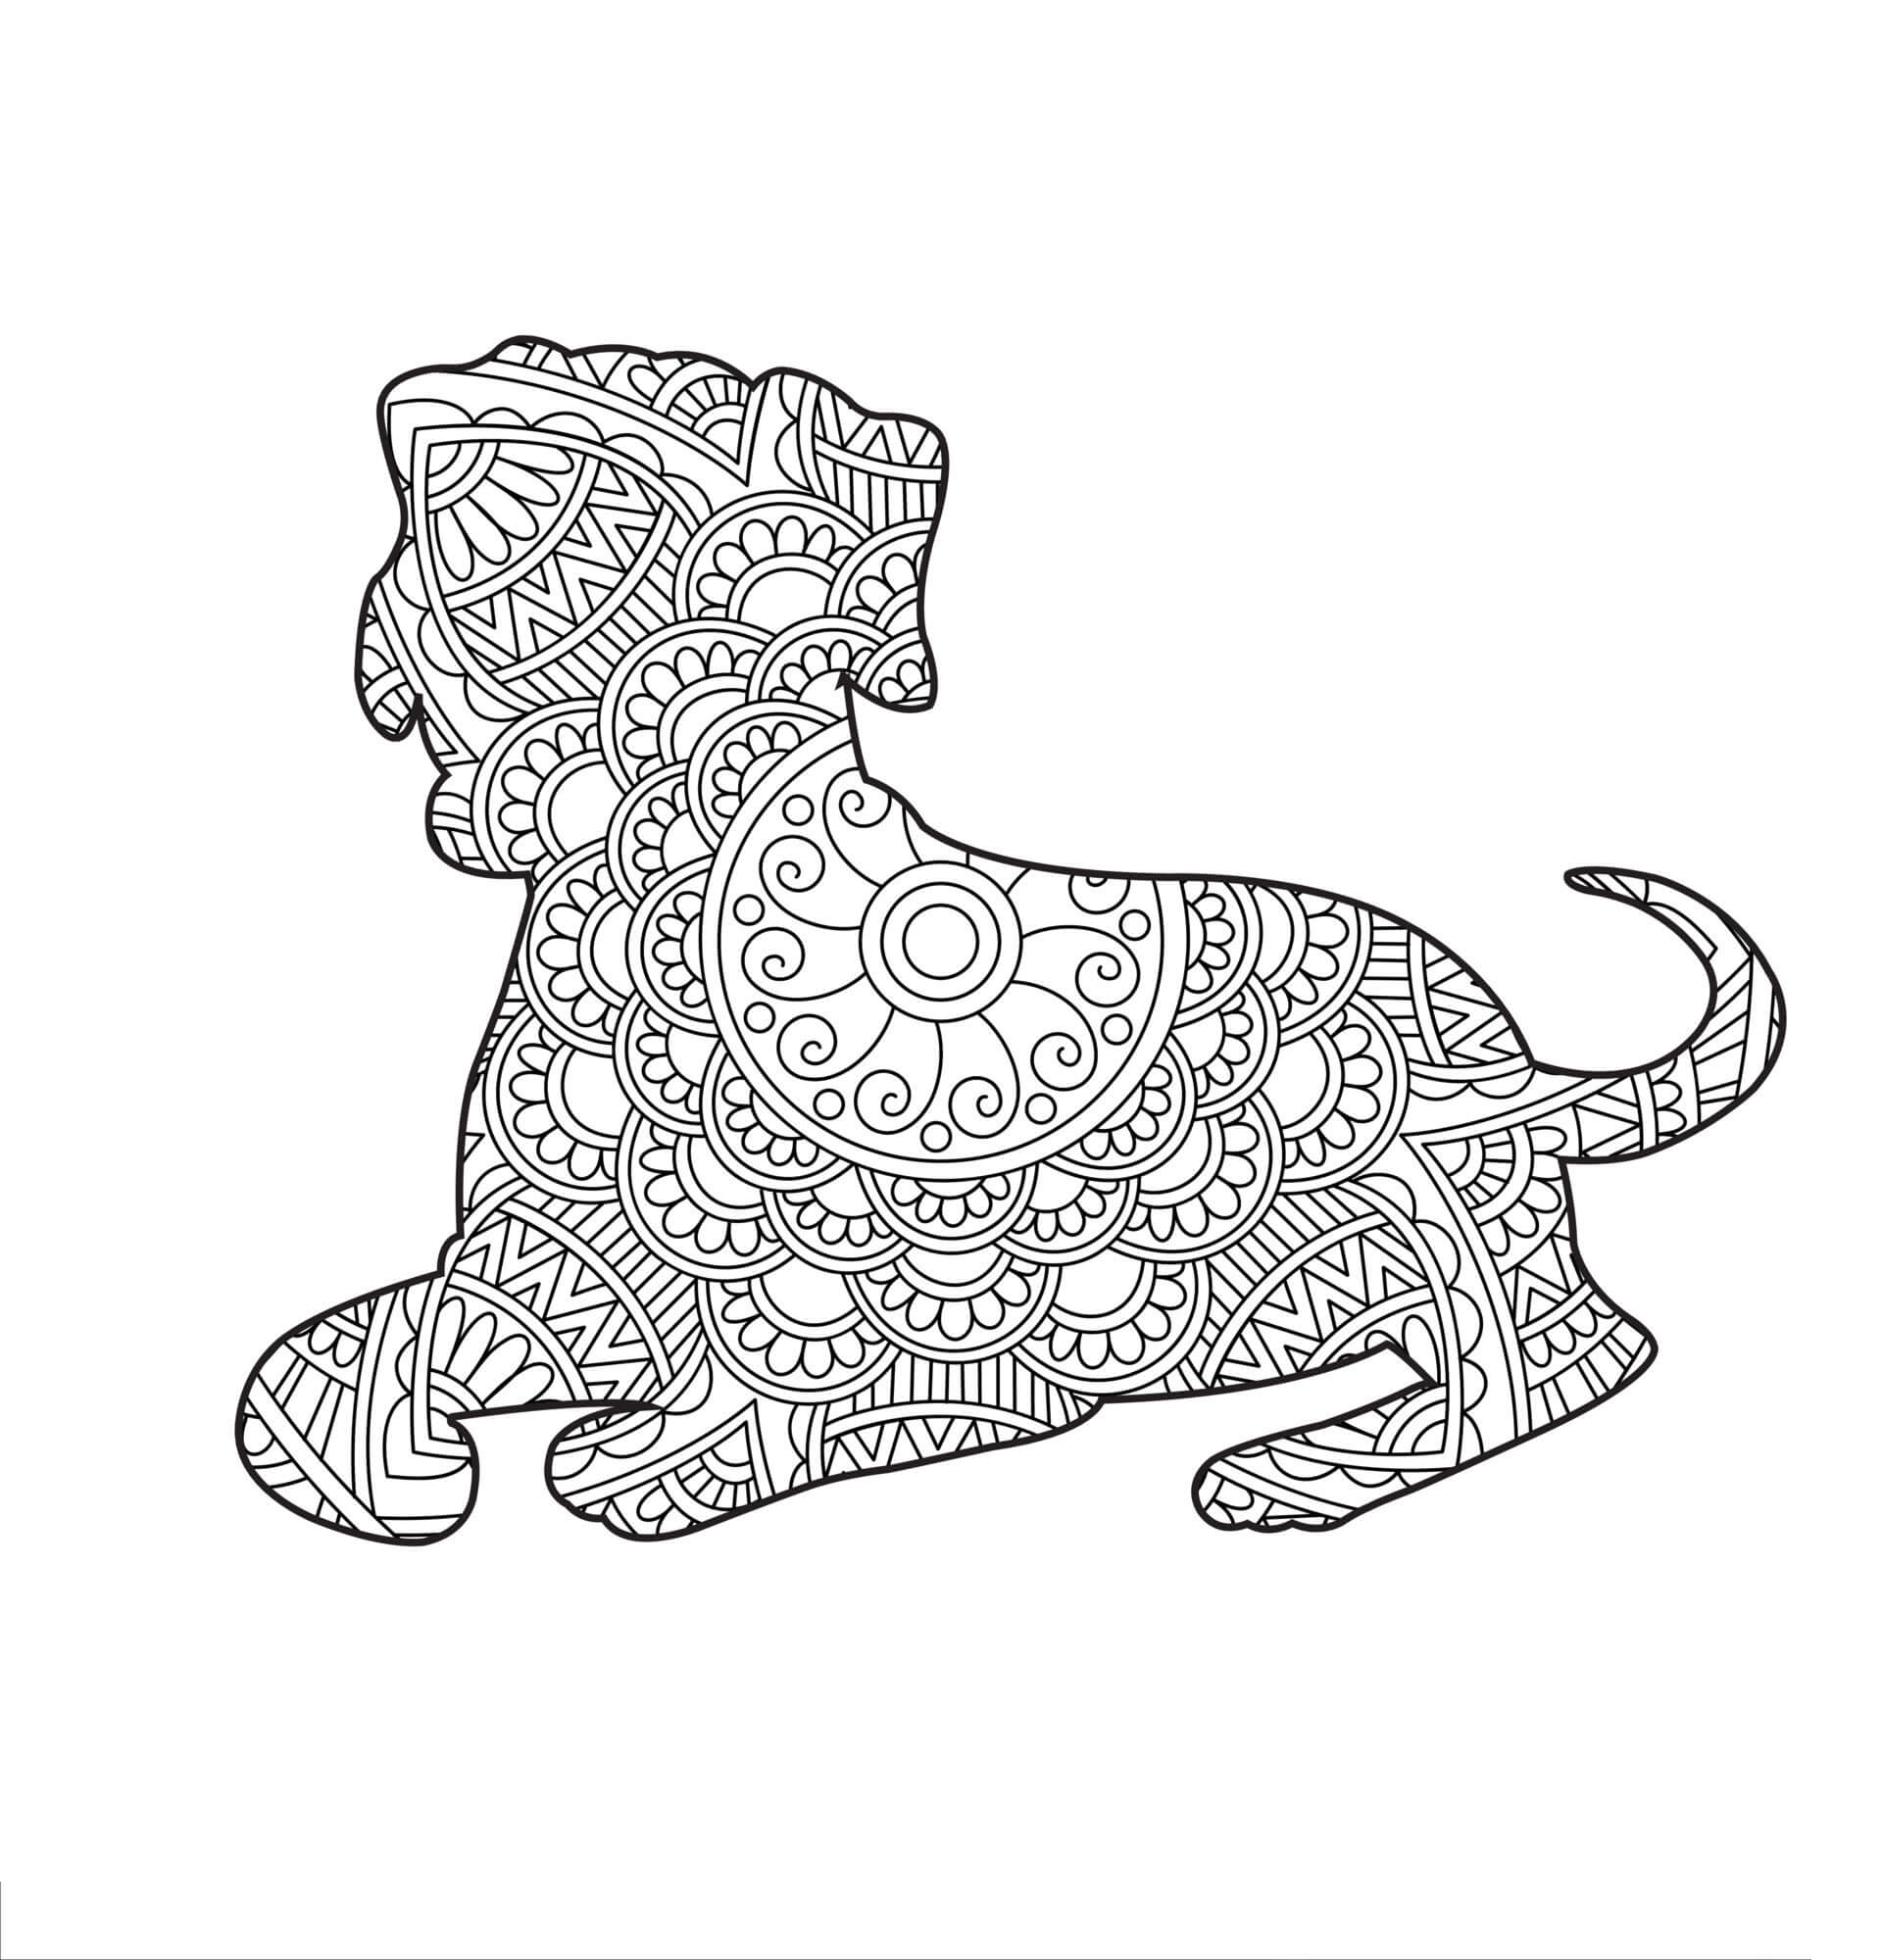 Mandala Dog Coloring Page - Sheet 10 Mandalas